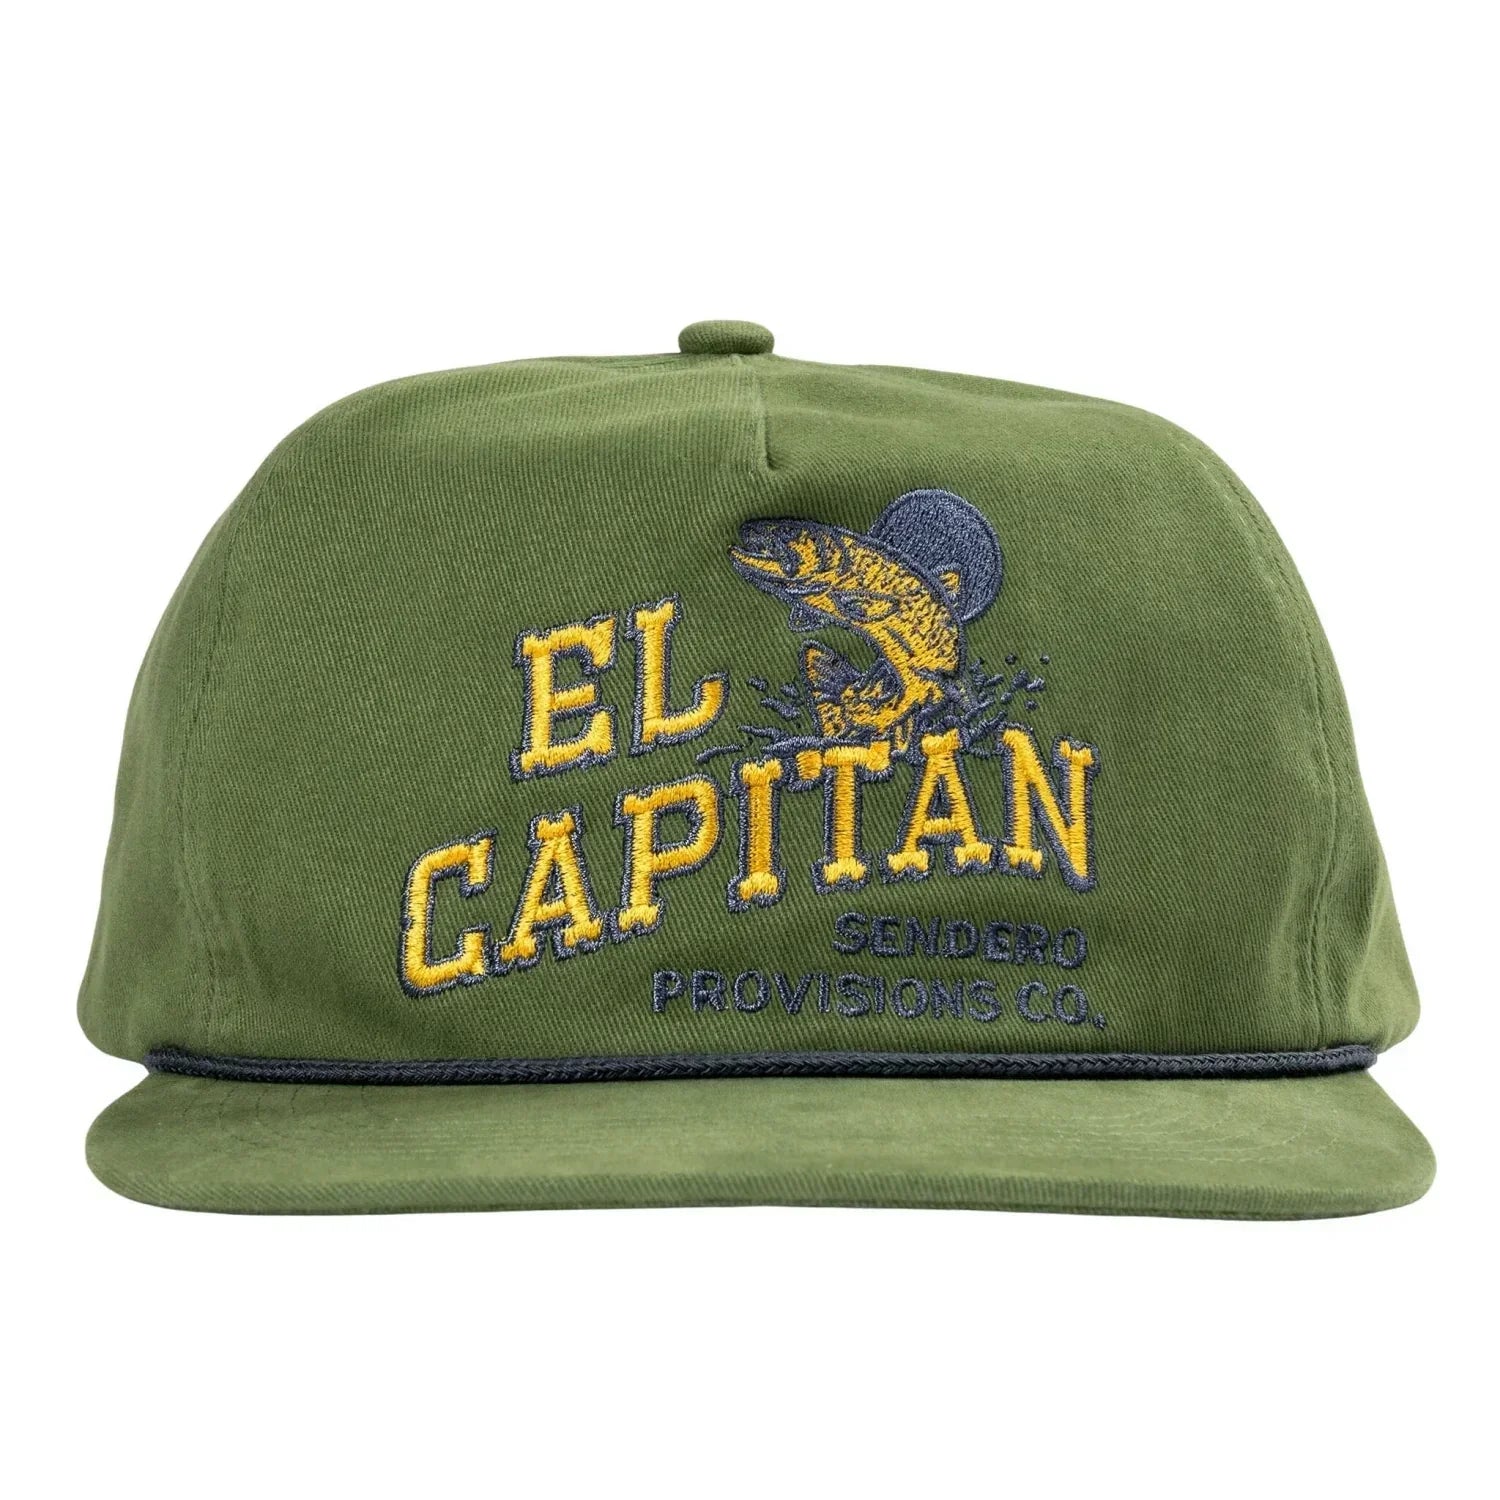 Sendero Provisions Co. 11. HATS - HATS BILLED - HATS BILLED El Capitan Hat